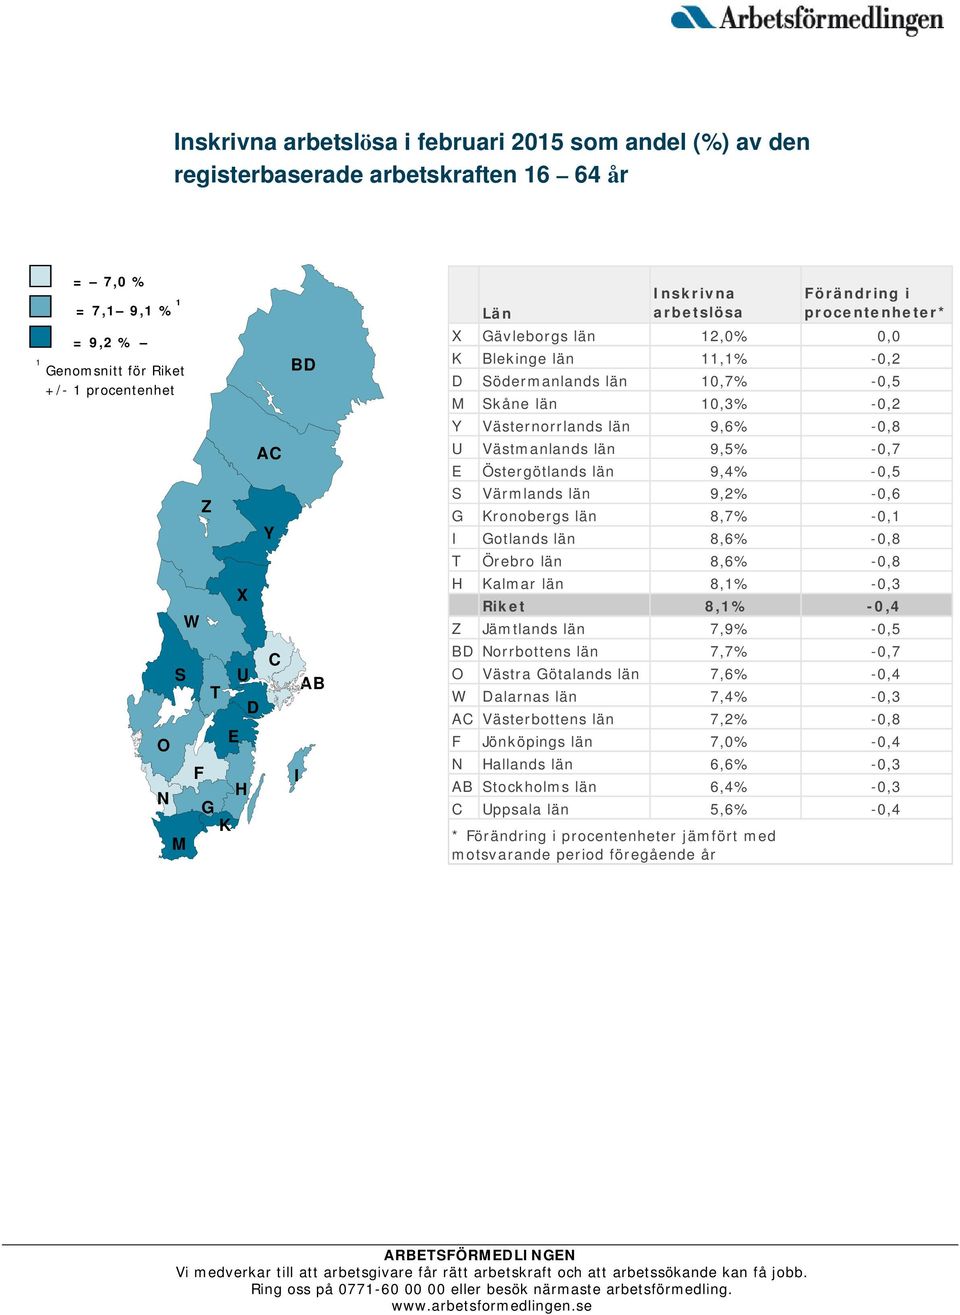 9,6% -0,8 U Västmanlands län 9,5% -0,7 E Östergötlands län 9,4% -0,5 S Värmlands län 9,2% -0,6 G Kronobergs län 8,7% -0,1 I Gotlands län 8,6% -0,8 T Örebro län 8,6% -0,8 H Kalmar län 8,1% -0,3 Riket